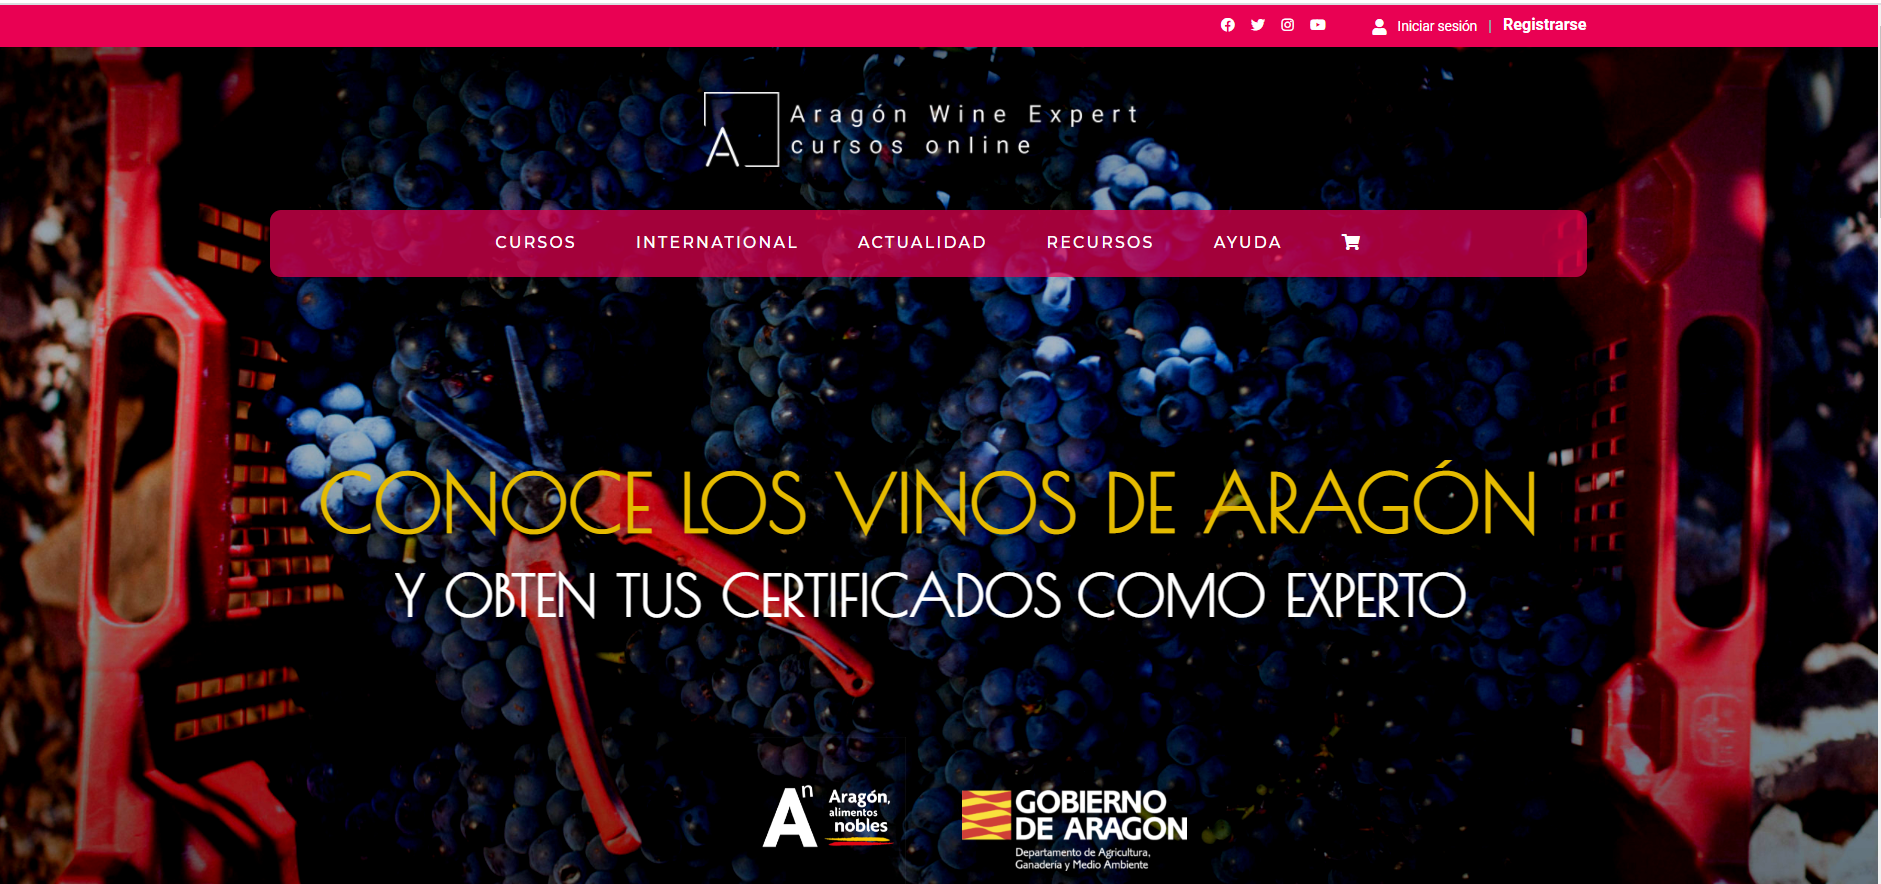 aragon wine expert